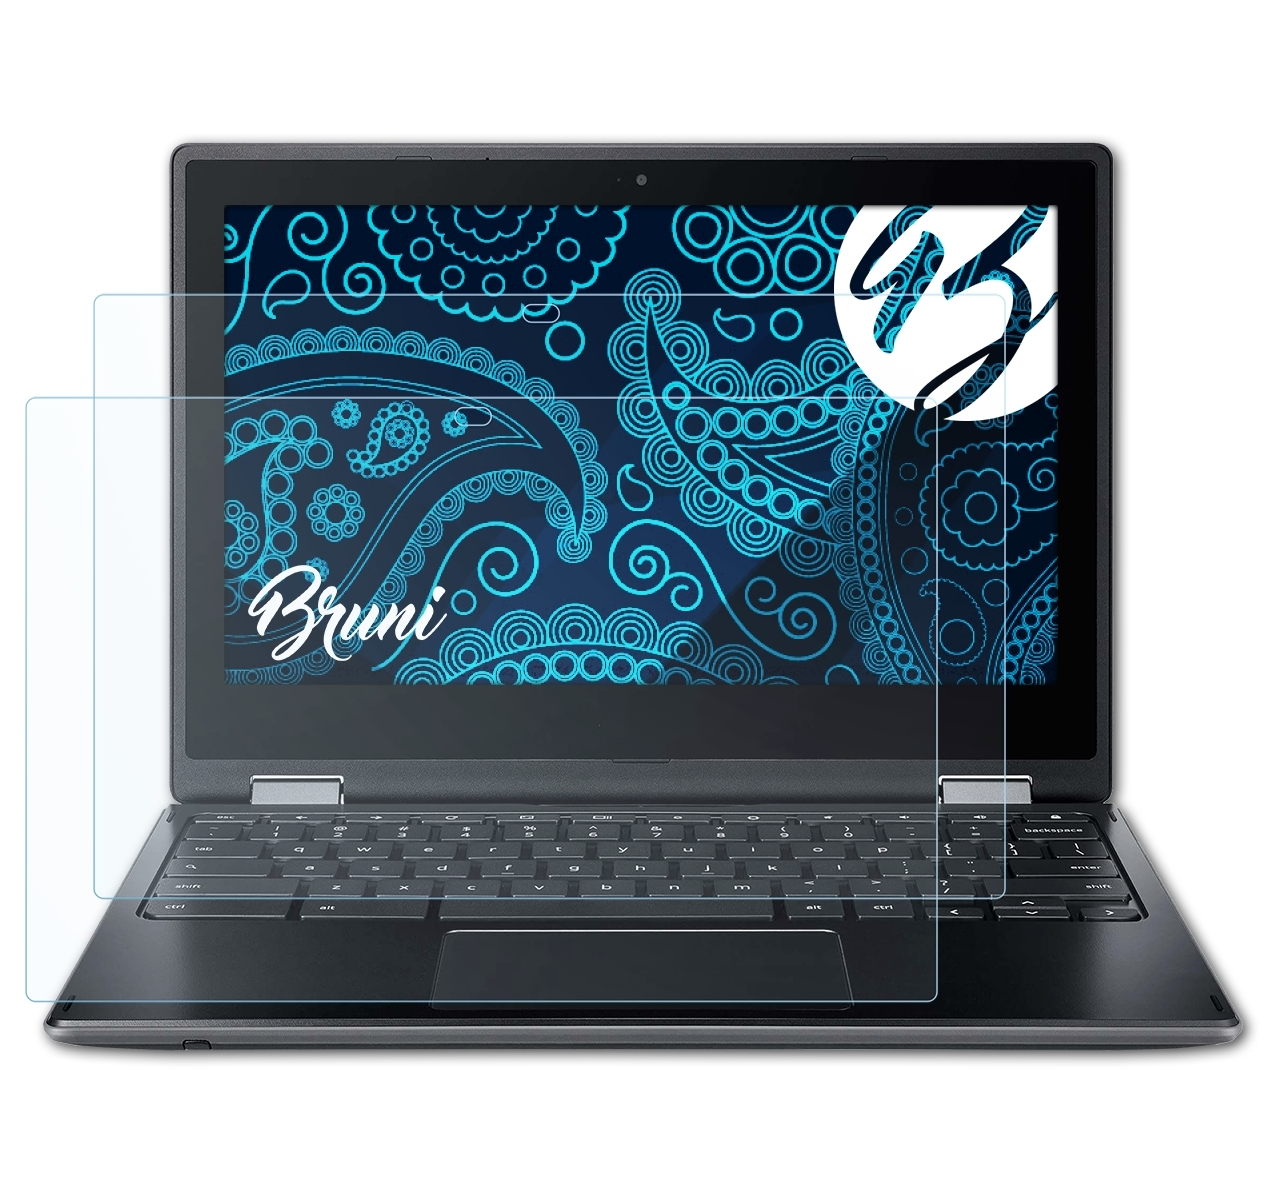 BRUNI 2x Basics-Clear Schutzfolie(für Acer 511) Chromebook Spin